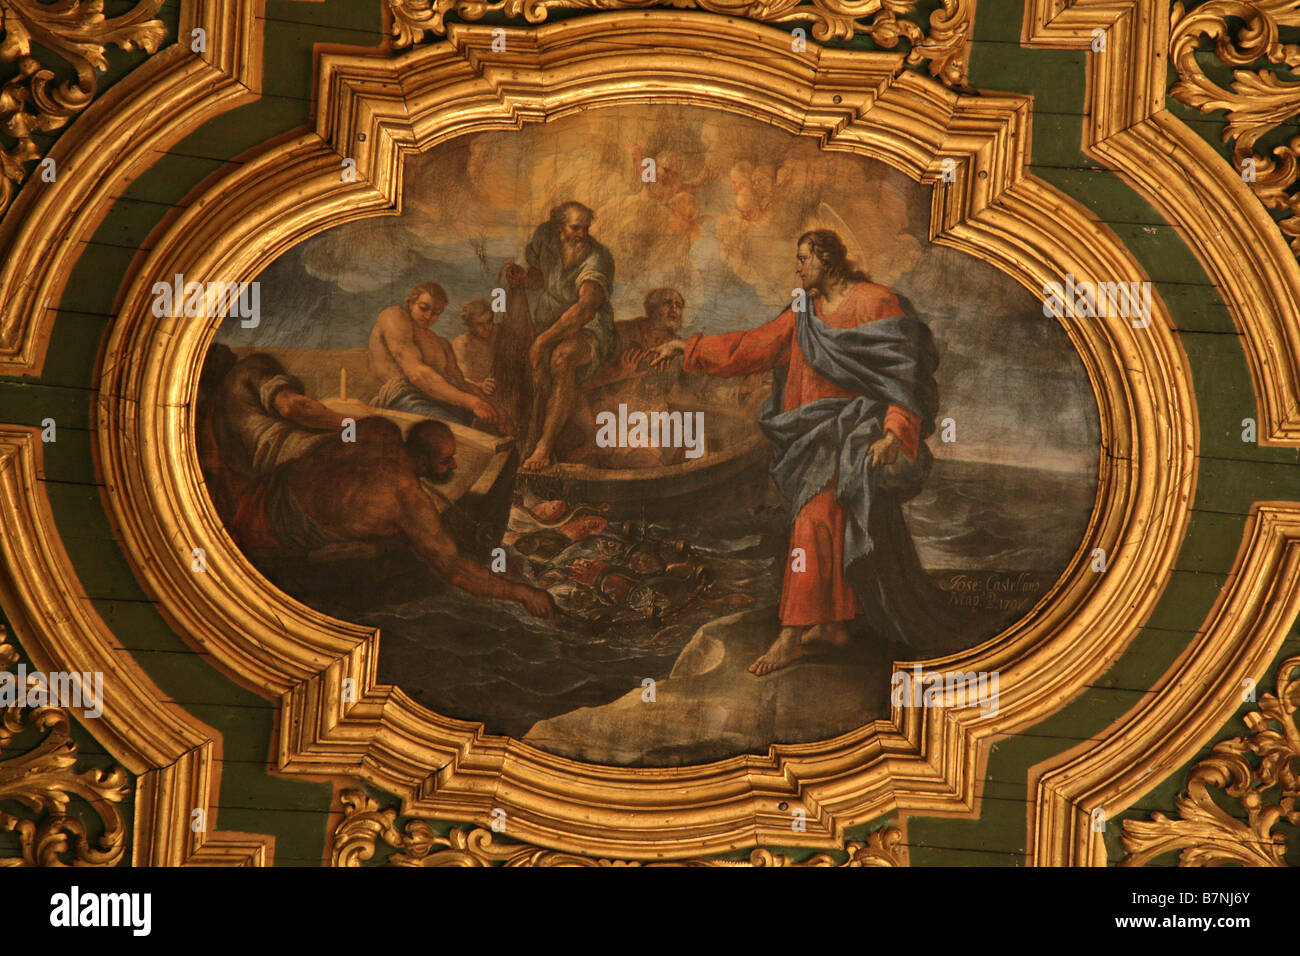 Jesus Christus ruft seinen ersten Apostel St. Andrew. Gemälde an der Decke des Doms in Kampanien, Italien Amalfi. Stockfoto